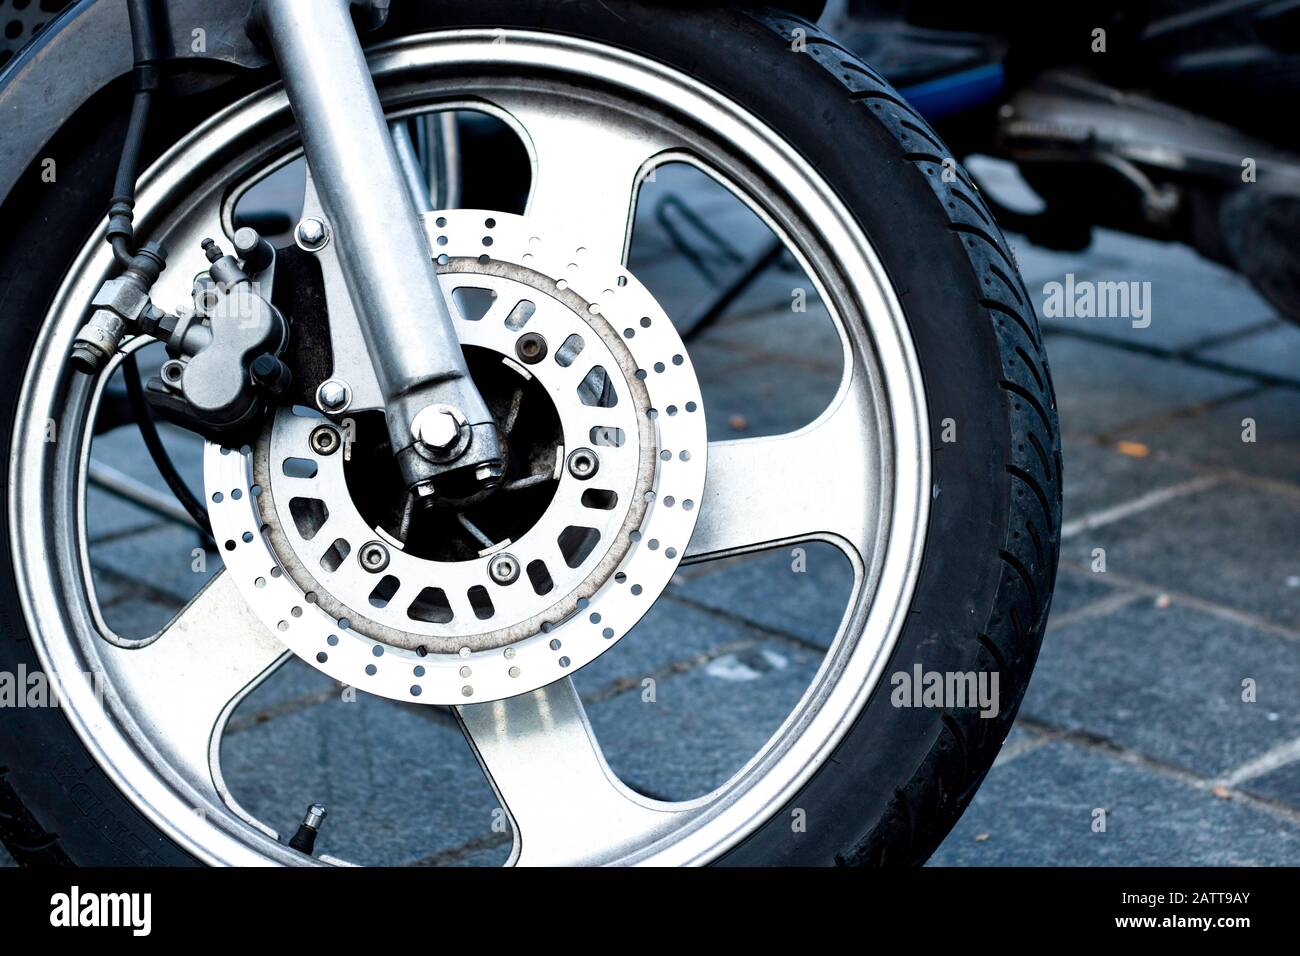 Detalle de primer plano de la rueda delantera de una motocicleta de  carreras. Se trata de la pinza de freno, el rotor, la llanta, el neumático  y la suspensión. Primer plano Fotografía